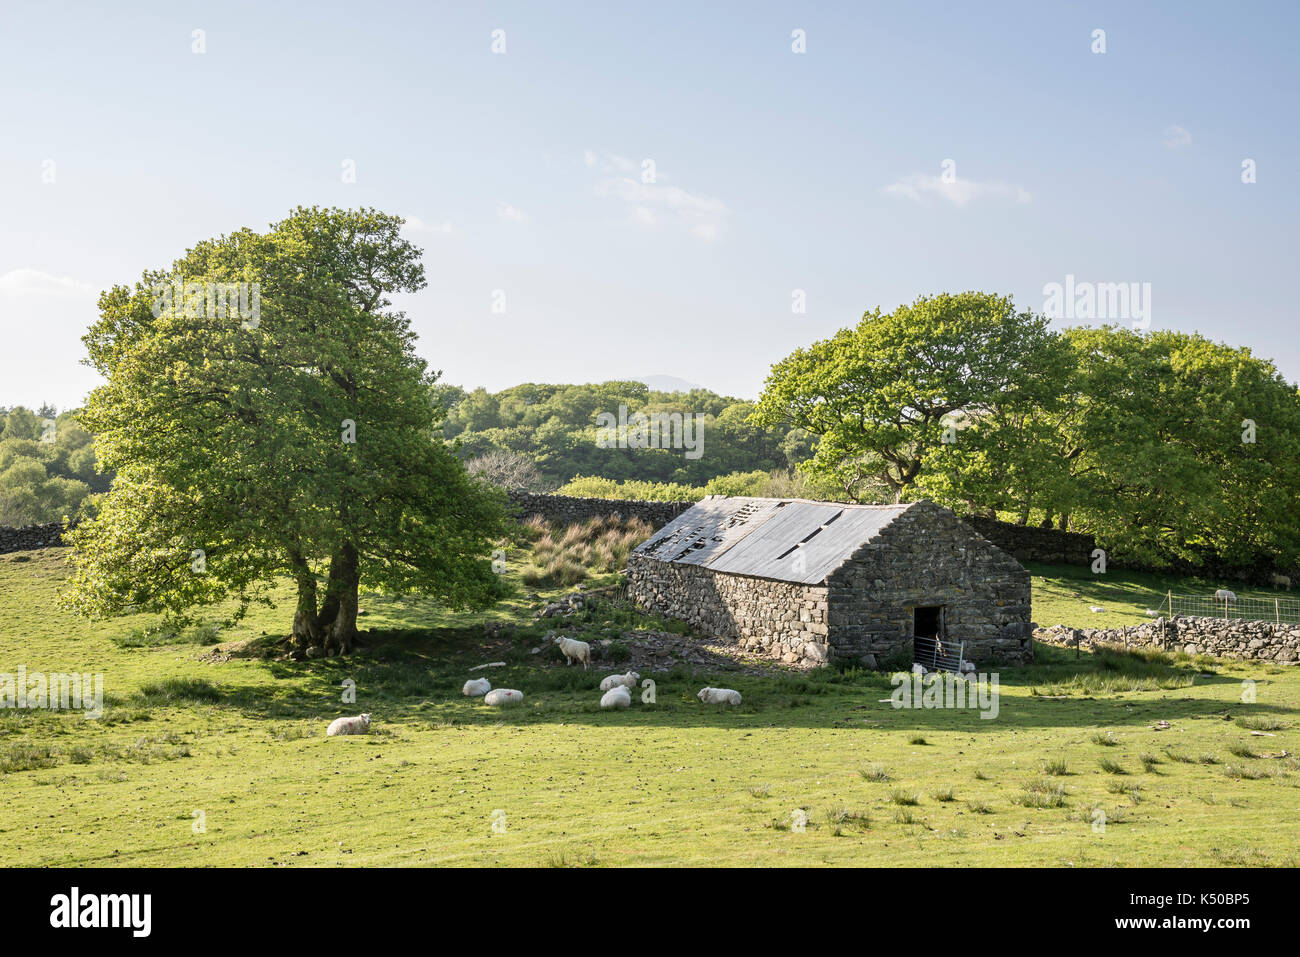 Il vecchio fienile in pietra circondato da pecore in Welsh campagna vicino a Harlech. Foto Stock